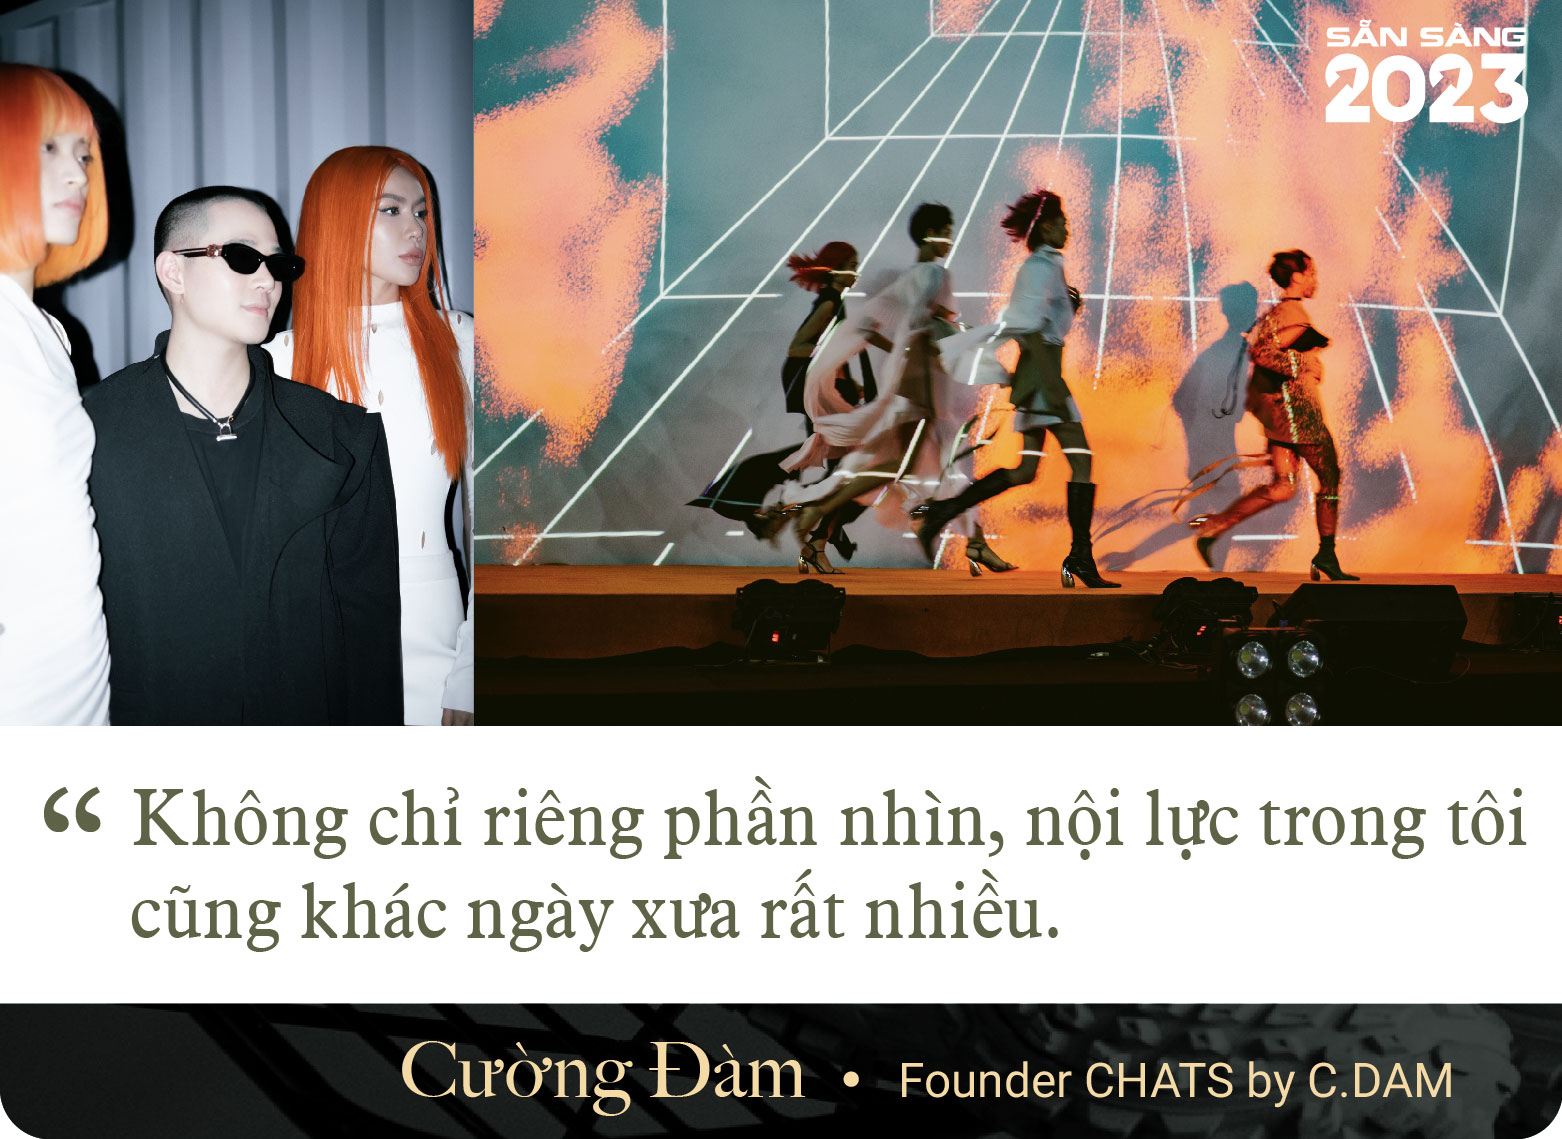 24 tuổi khởi nghiệp với 20 triệu, gần 30 tuổi &quot;đầu tư&quot; 2,5 tỷ đi học thời trang, Founder của CHATS by C.DAM: “Thuyền to mới ra được biển lớn” - Ảnh 11.